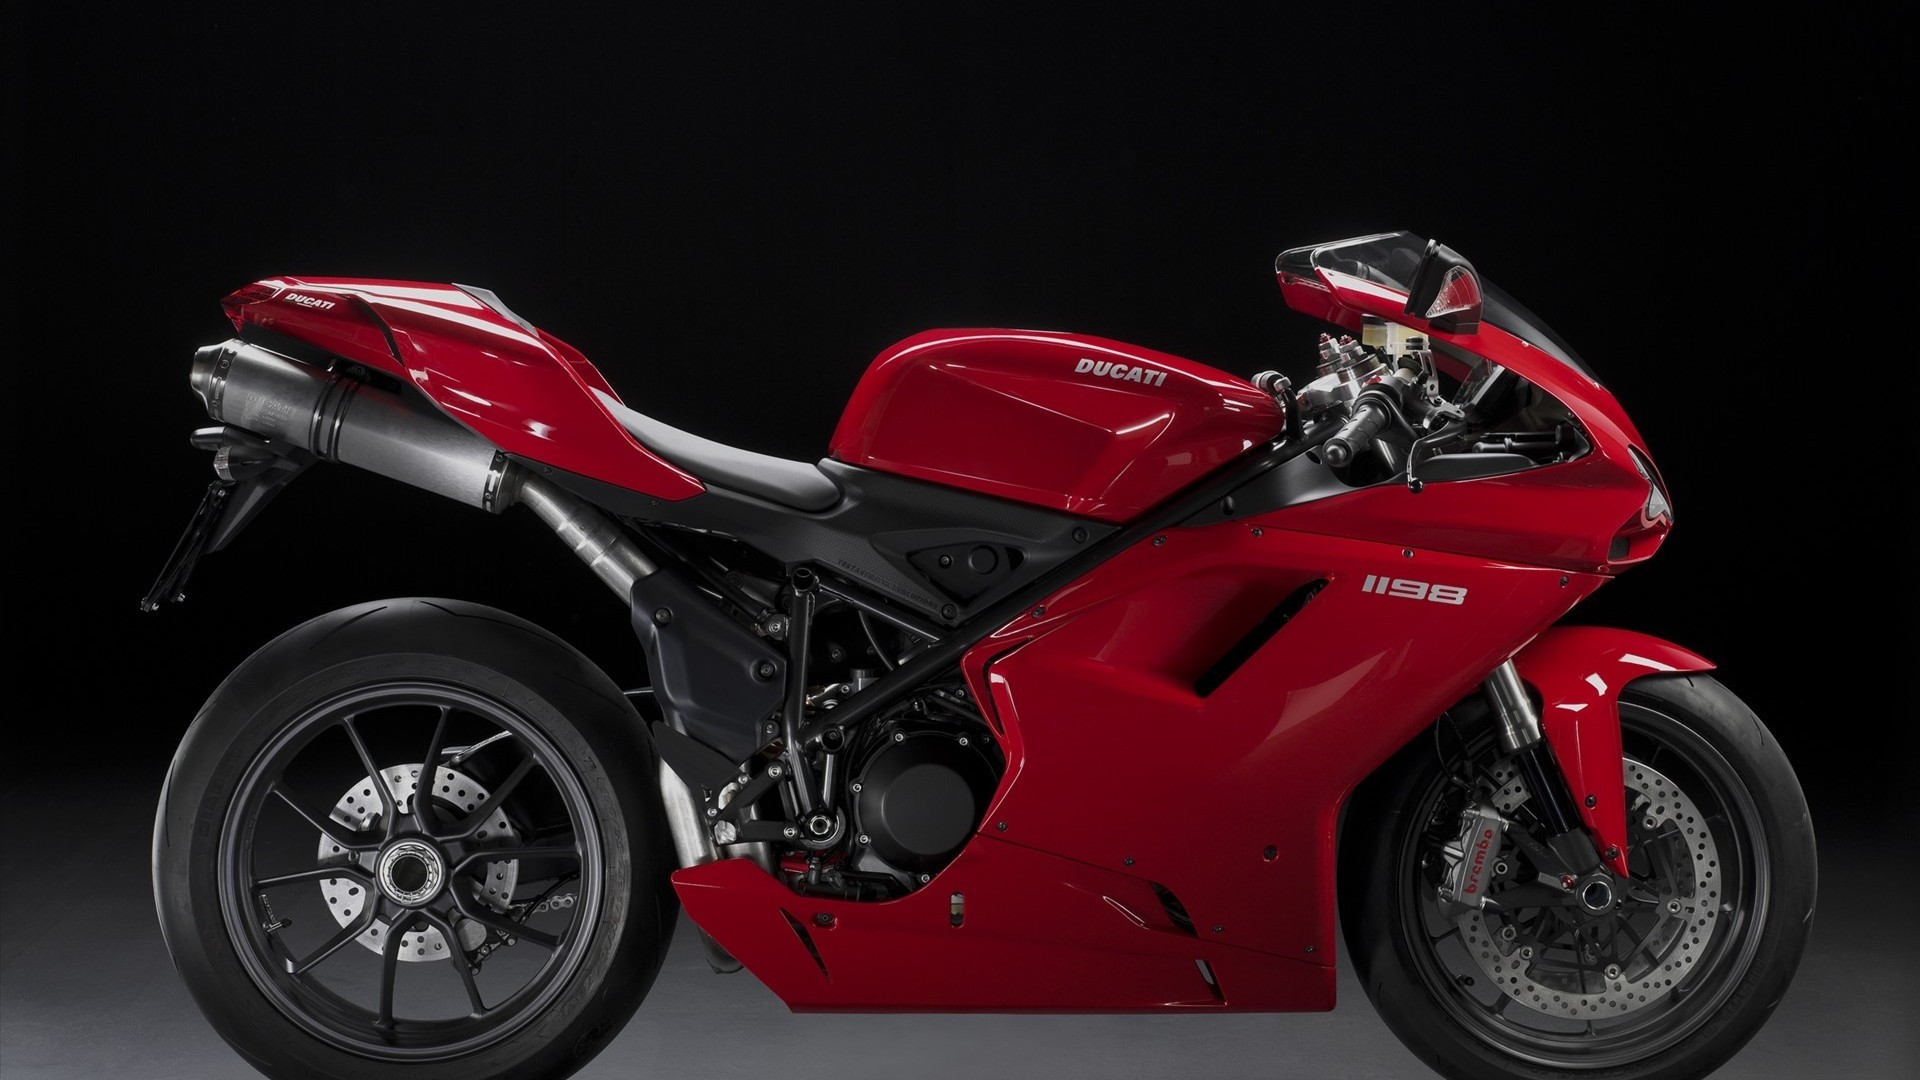 Ducati Ducati 1198 Superbike 1920x1080